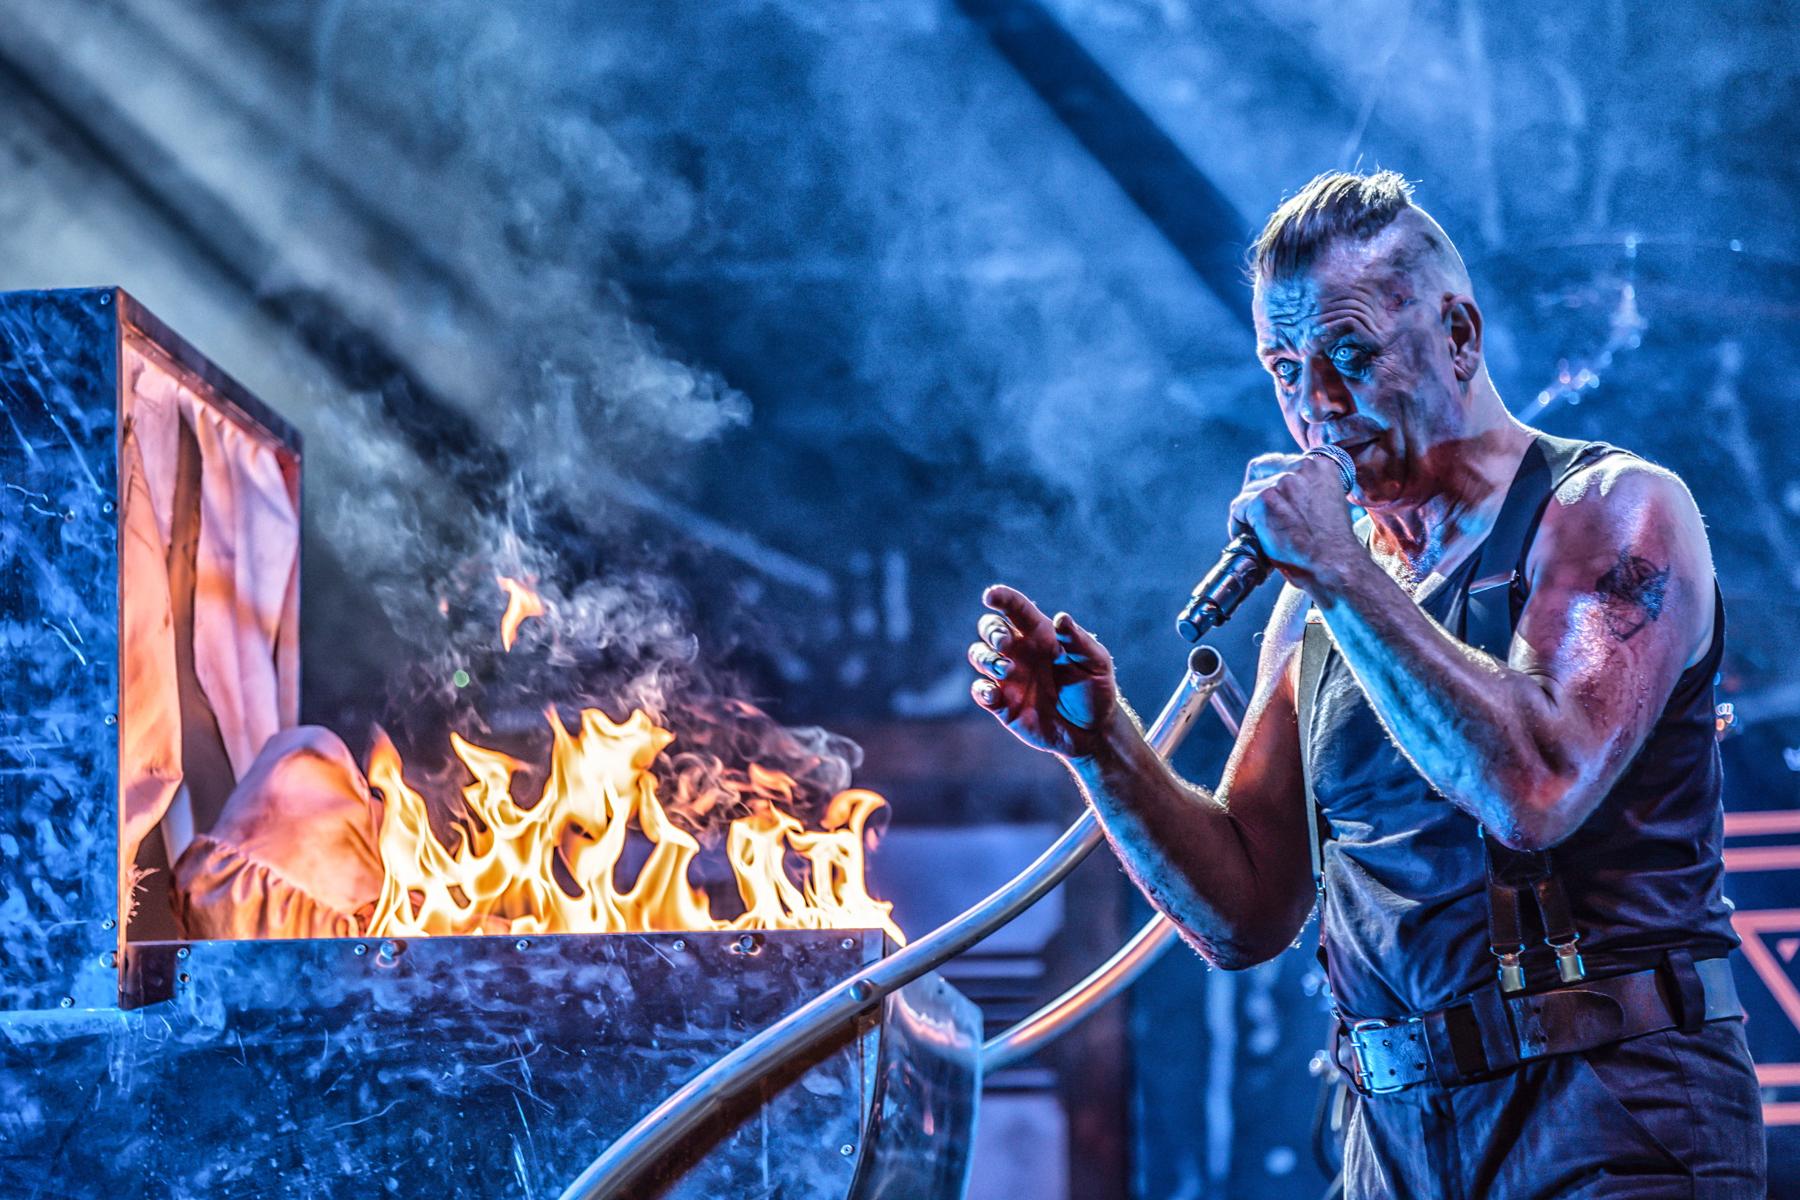 Stahlzeit, die wohl bekannteste Rammstein-Coverband, heizen ihrem action-hungrigen Publikum sprichwörtlich ein. 